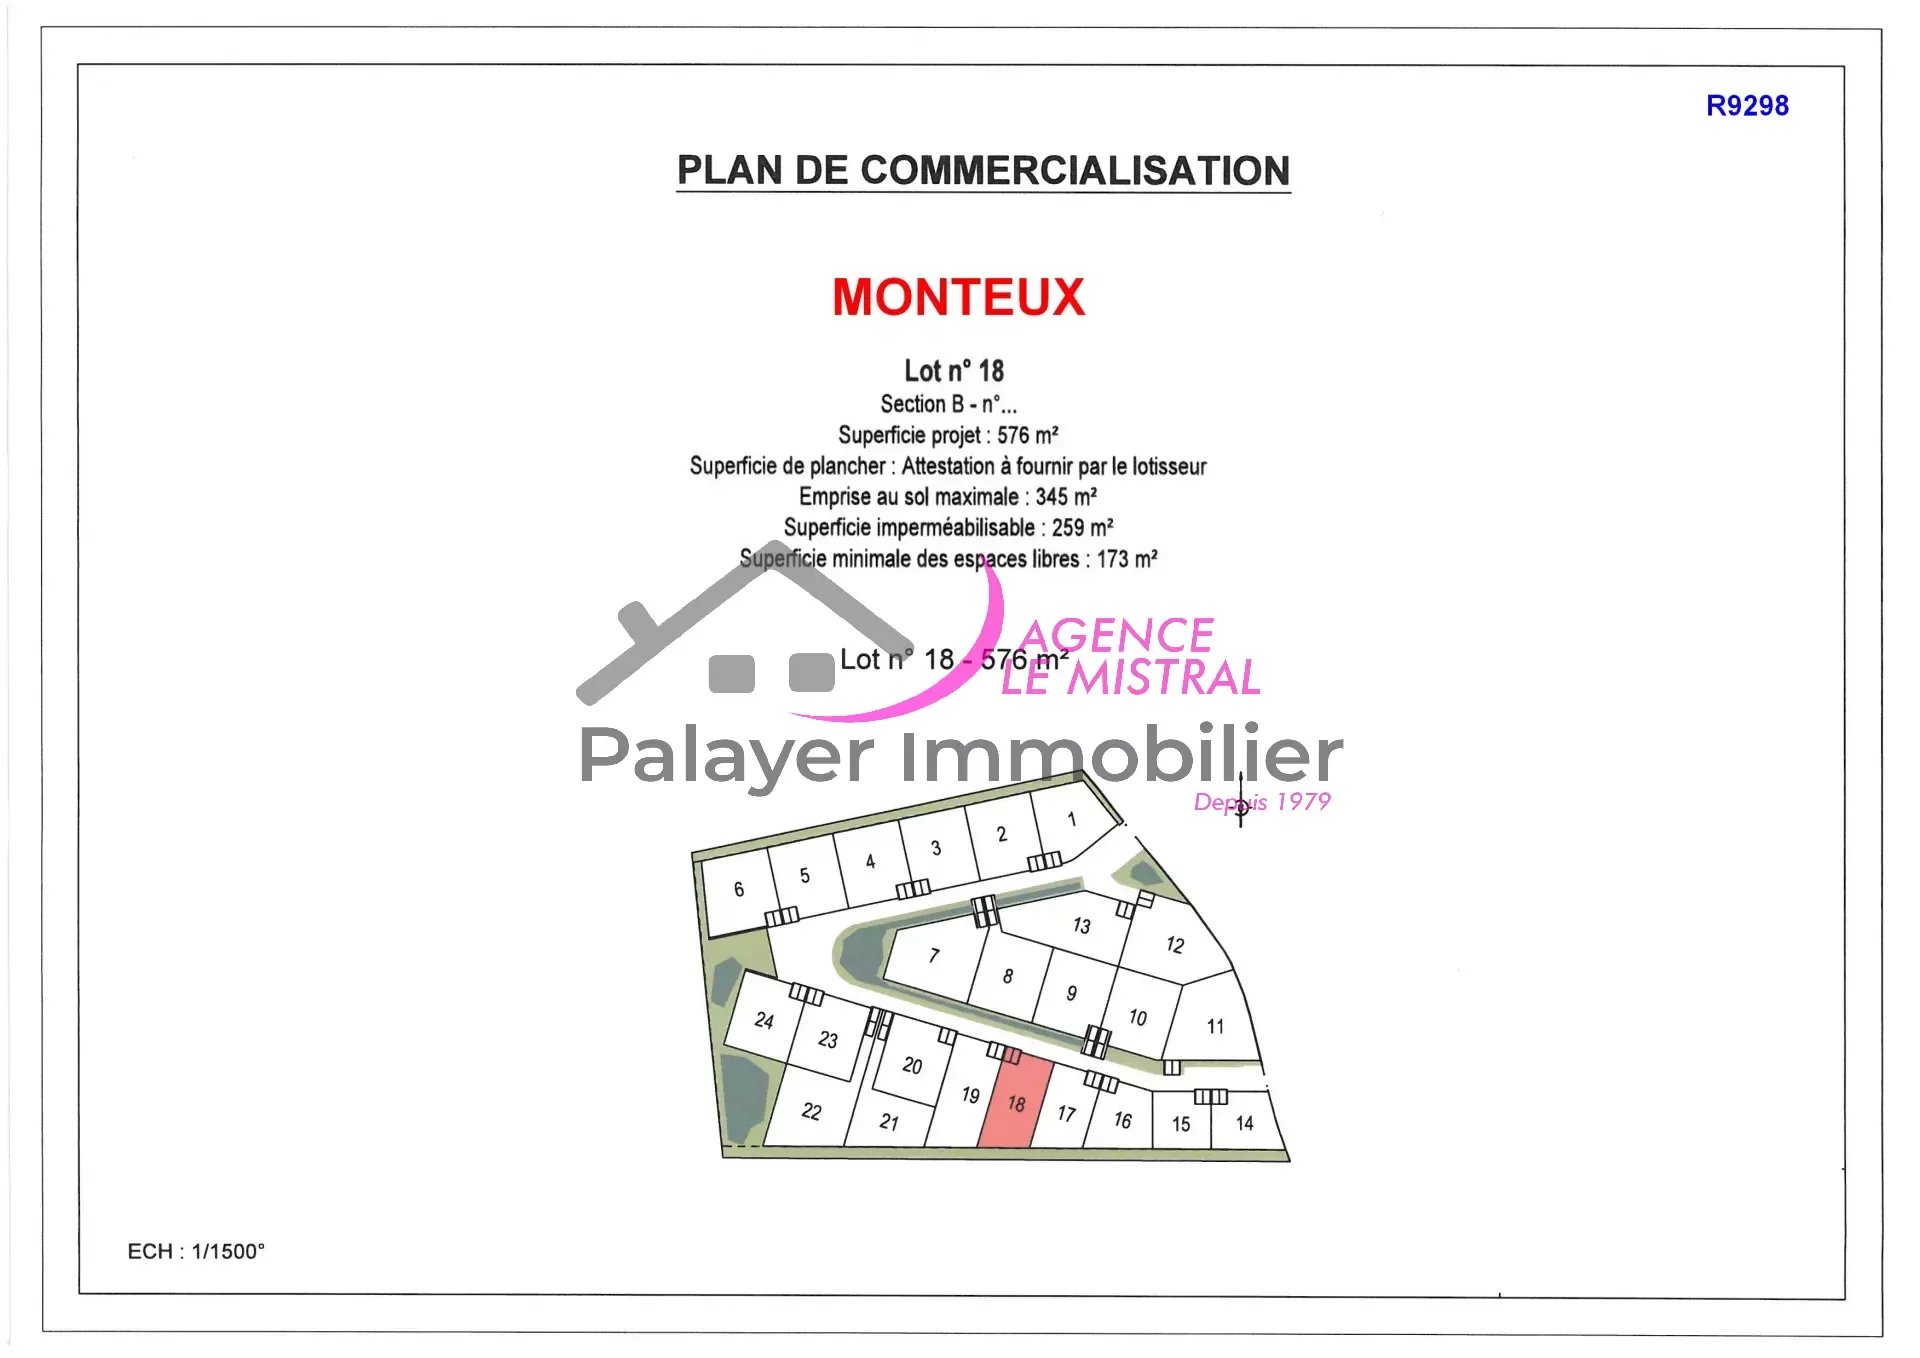 Vente Terrain à Monteux (84170) - Le Mistral-Palayer Immobilier